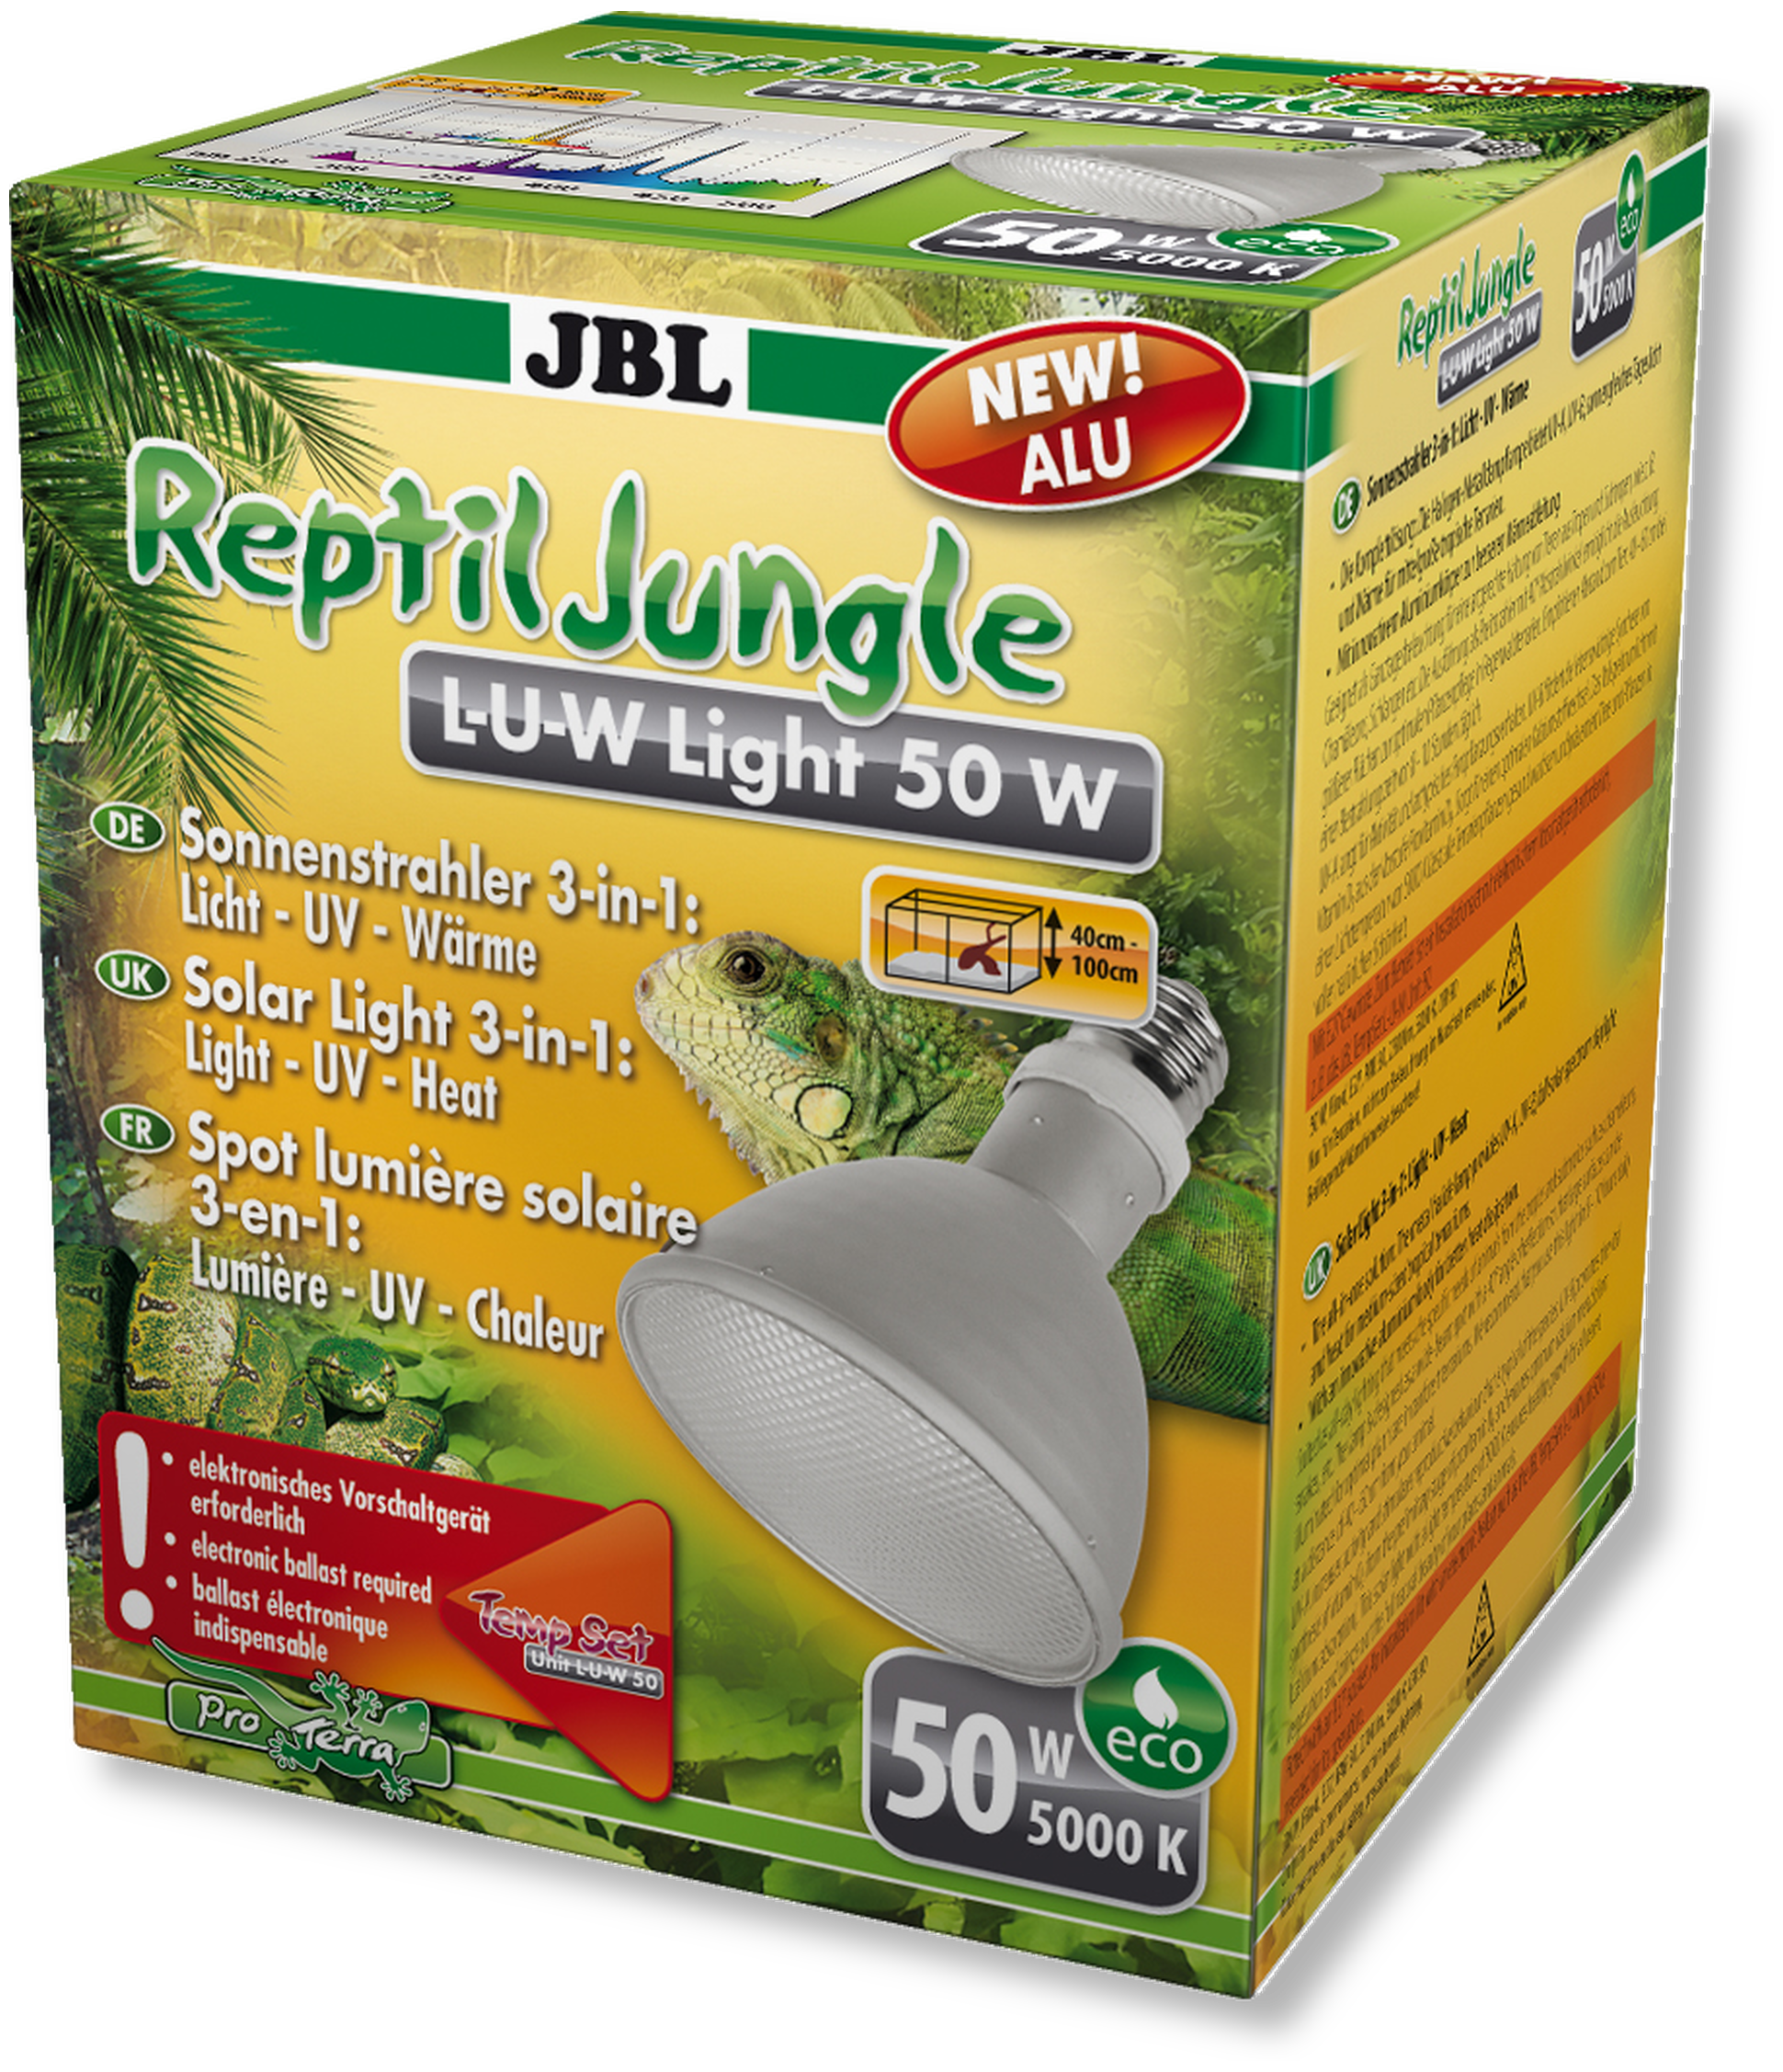 JBL ReptilJungle L-U-W, Light alu, 70 W